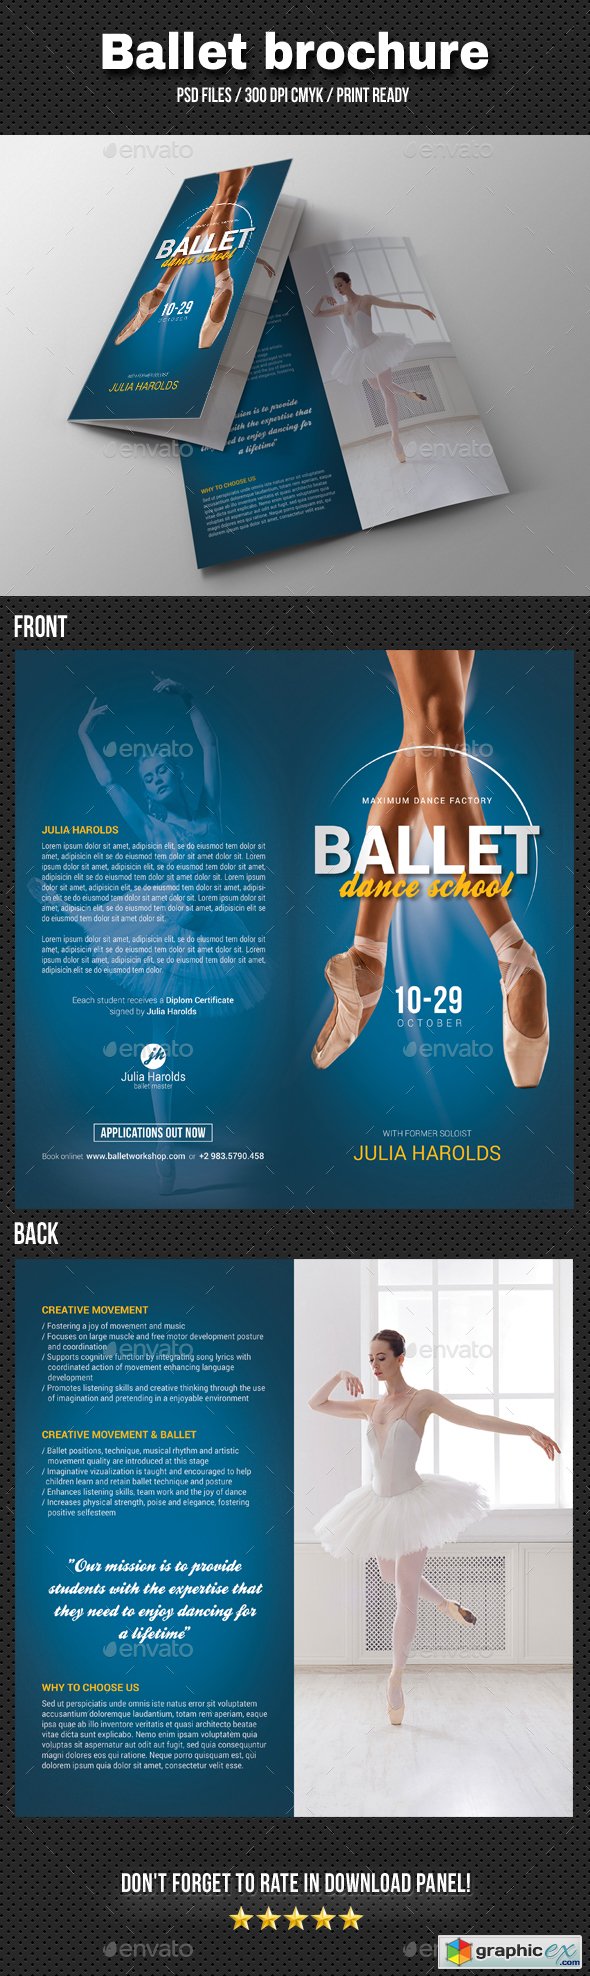 Ballet Workshop Bi-Fold Brochure